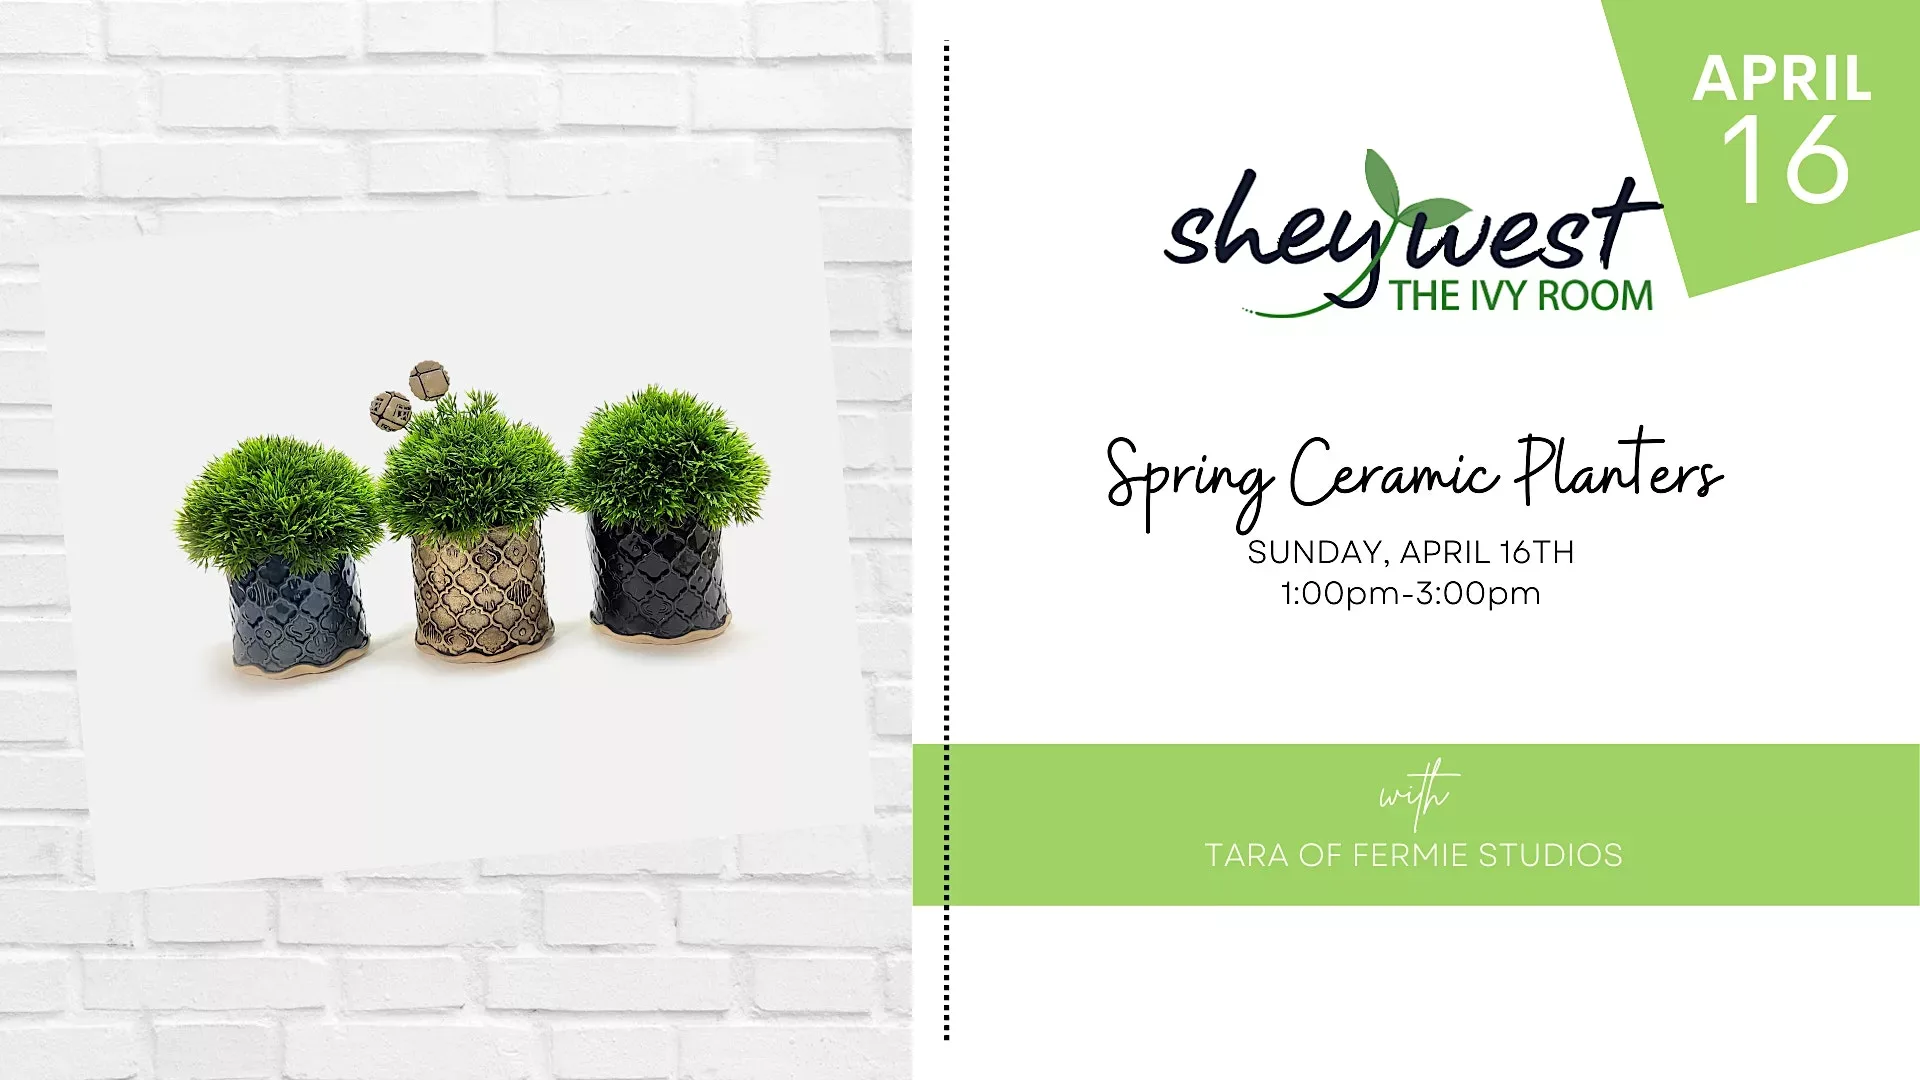 Spring Ceramic Planters